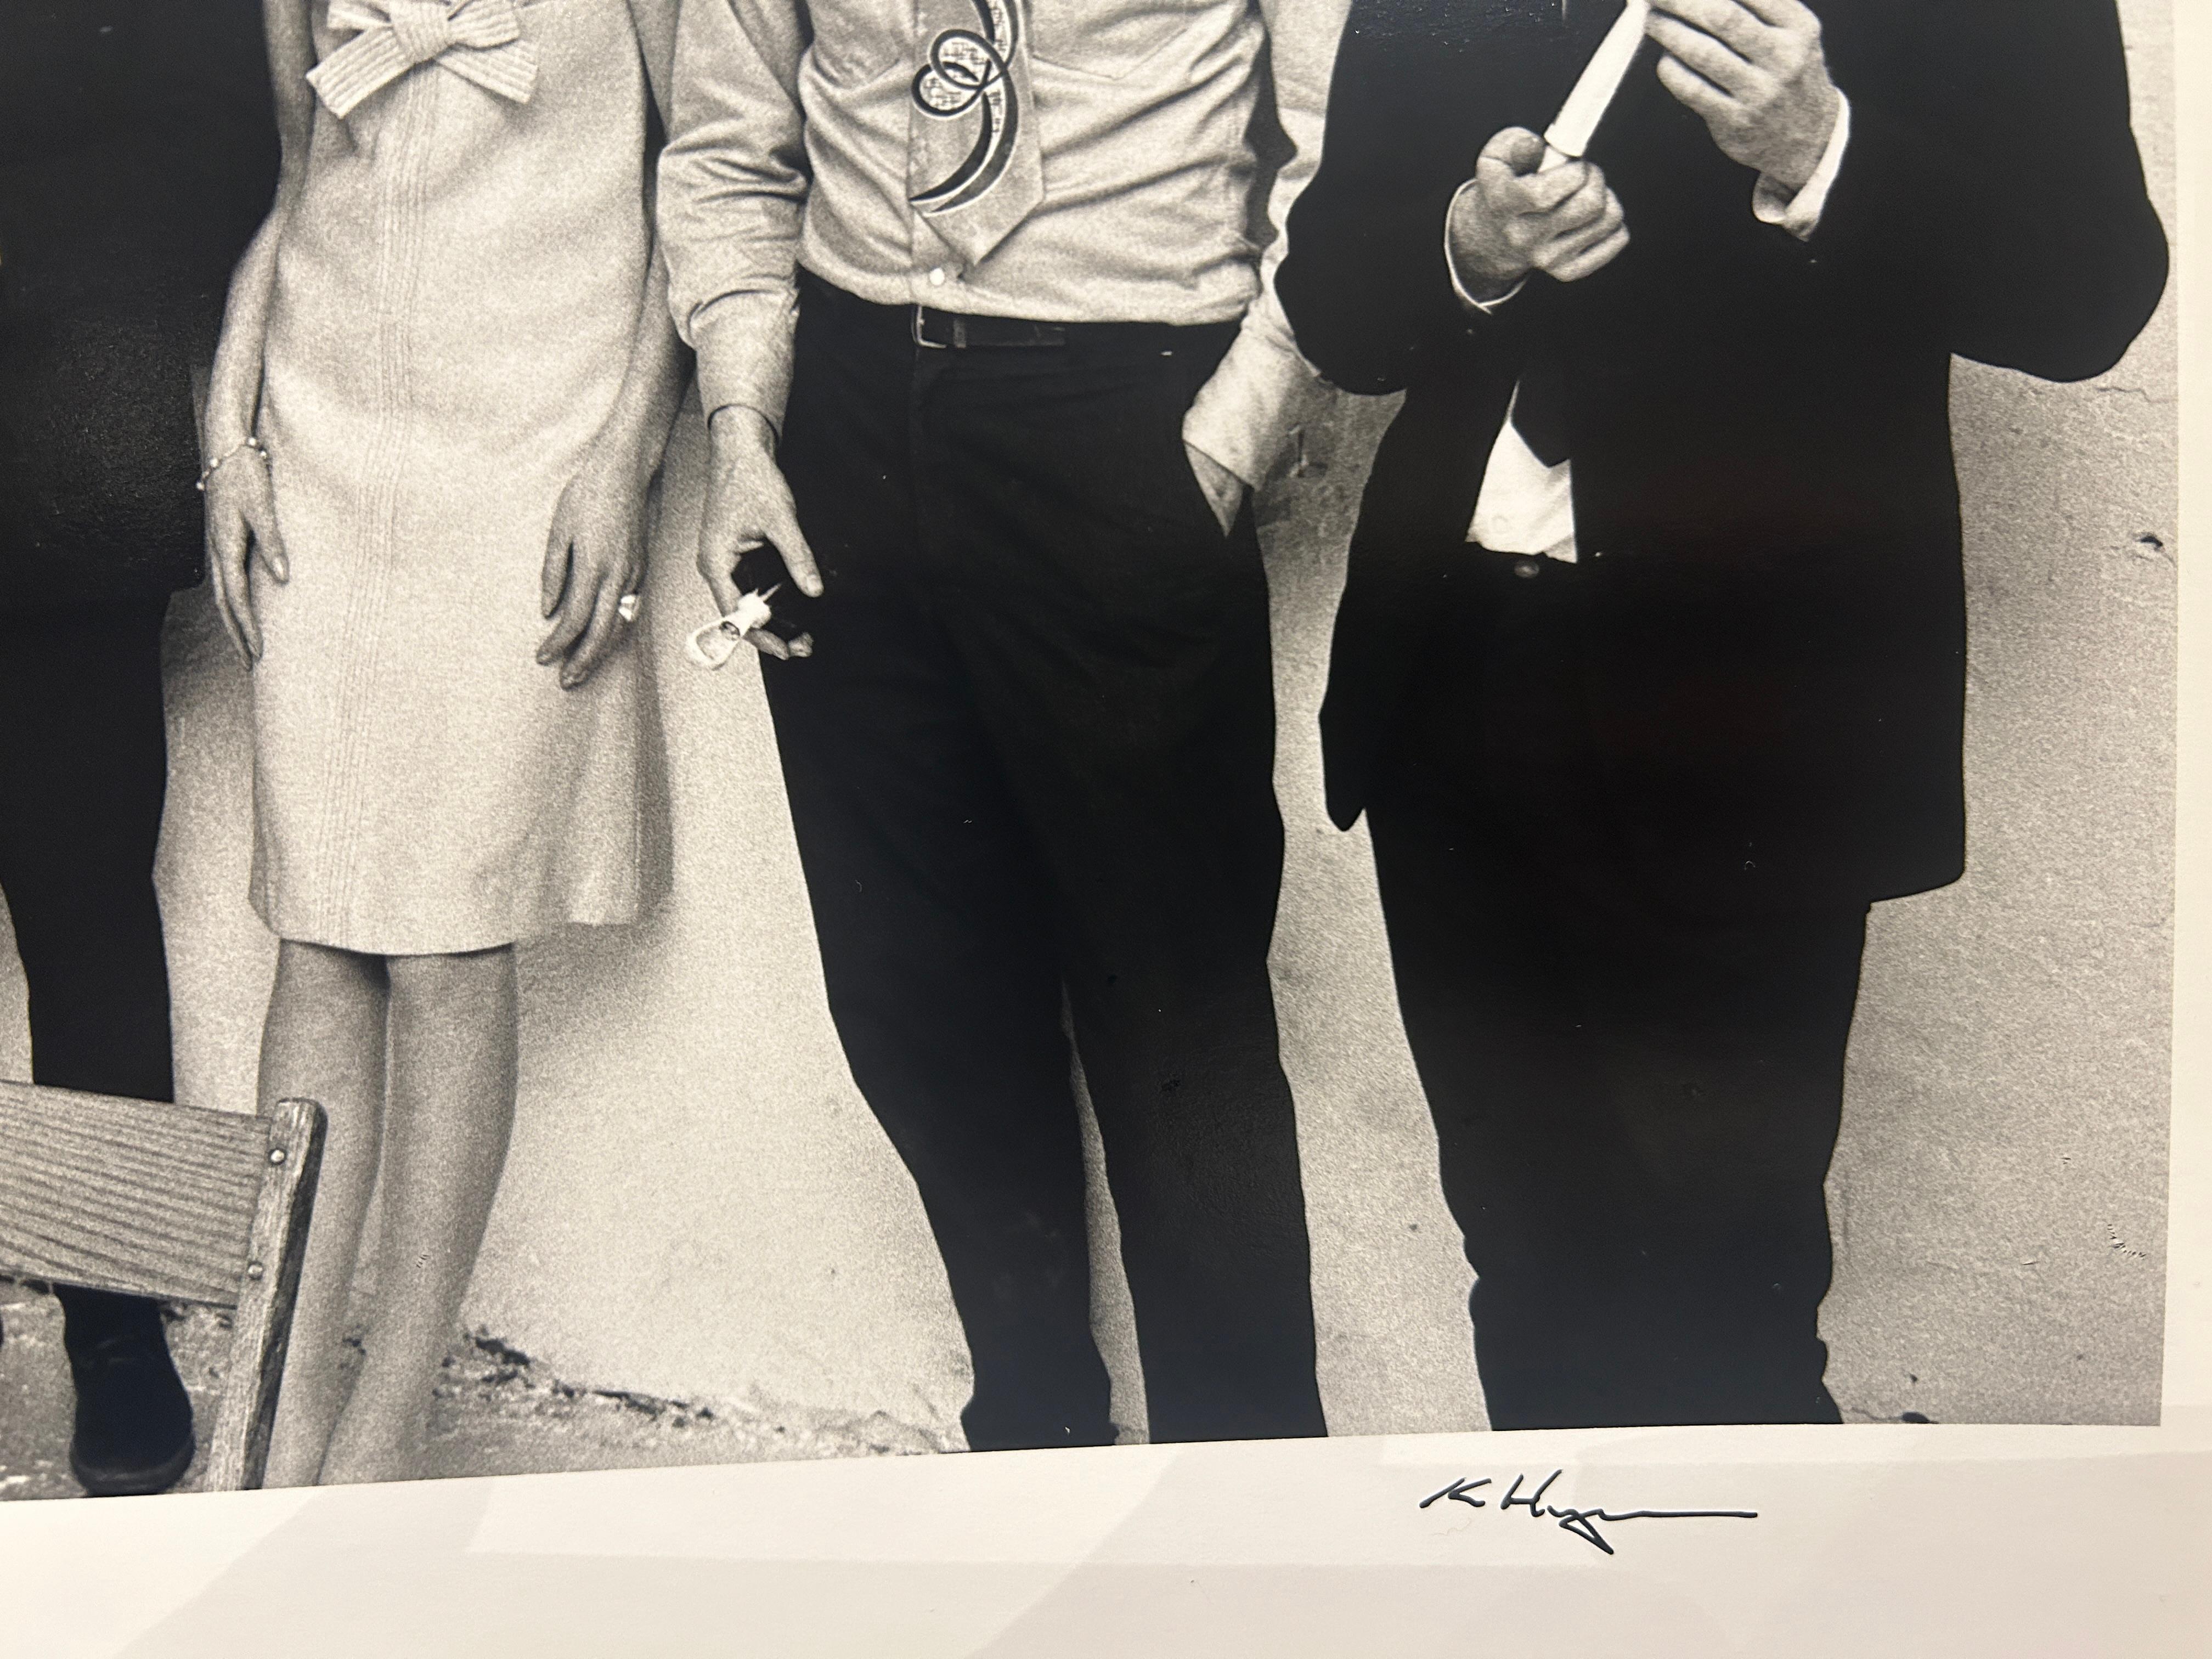 En 1964, Heyman est invité par Basic Books Publishing à collaborer sur le thème du Pop art. À l'automne 1964, Heyman passe trois jours à photographier des artistes tels qu'Andy Warhol, Roy Lichtenstein, Claes Oldenburg, James Rosenquist et Tom